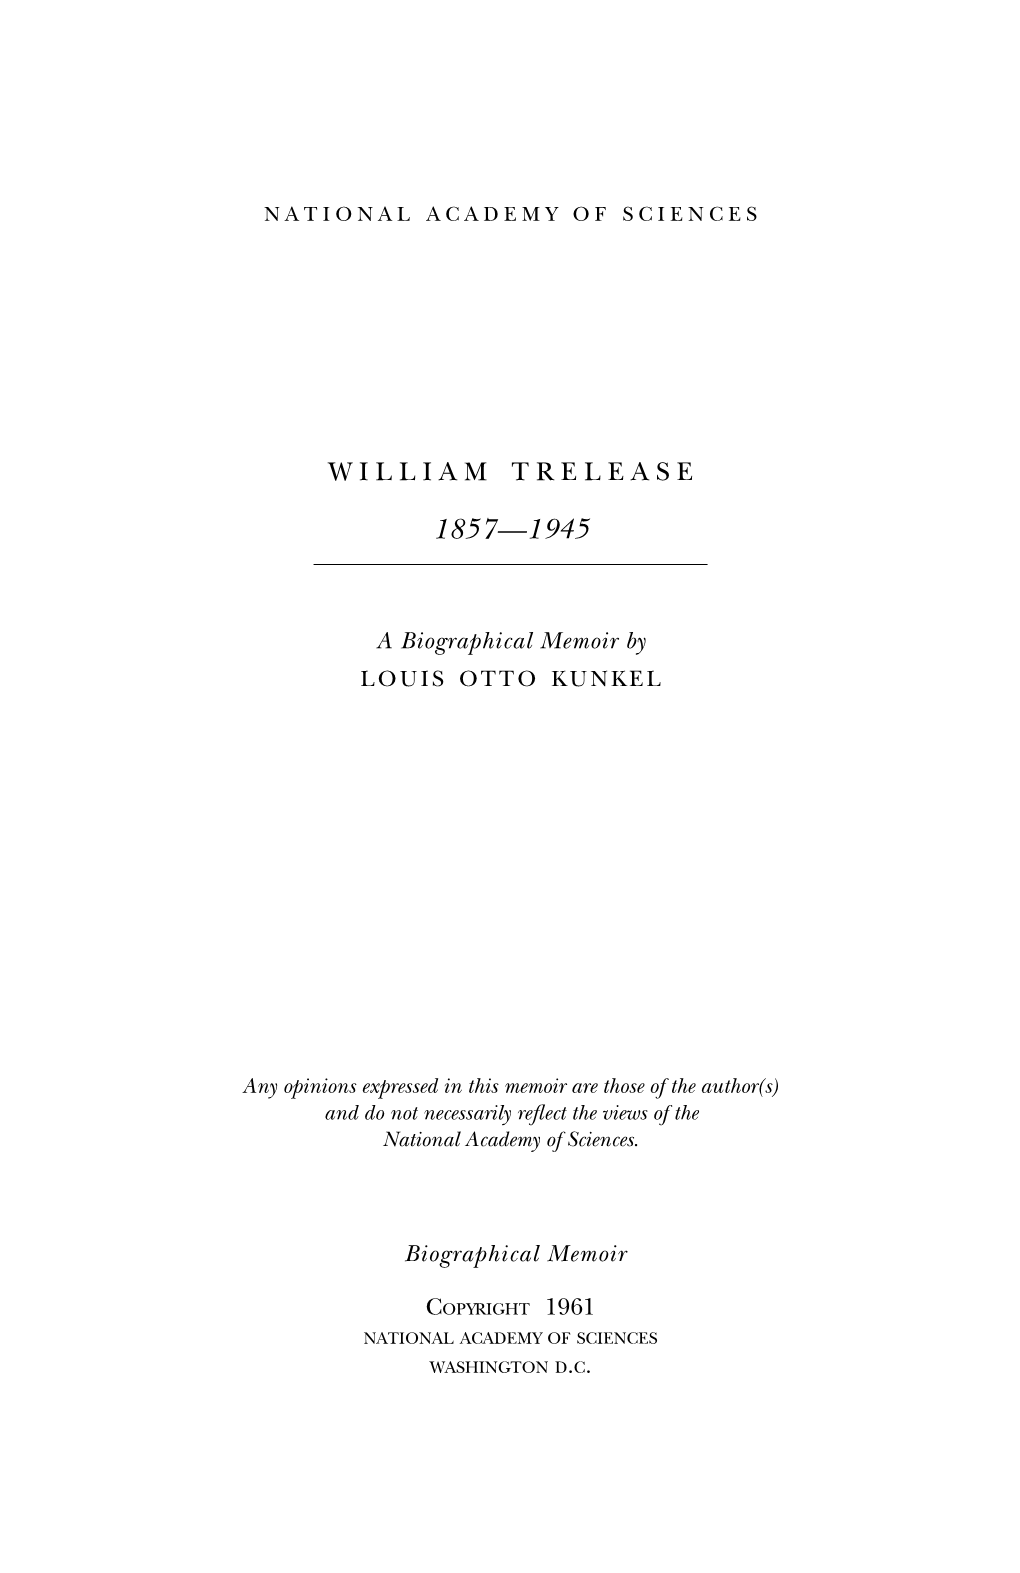 William Trelease